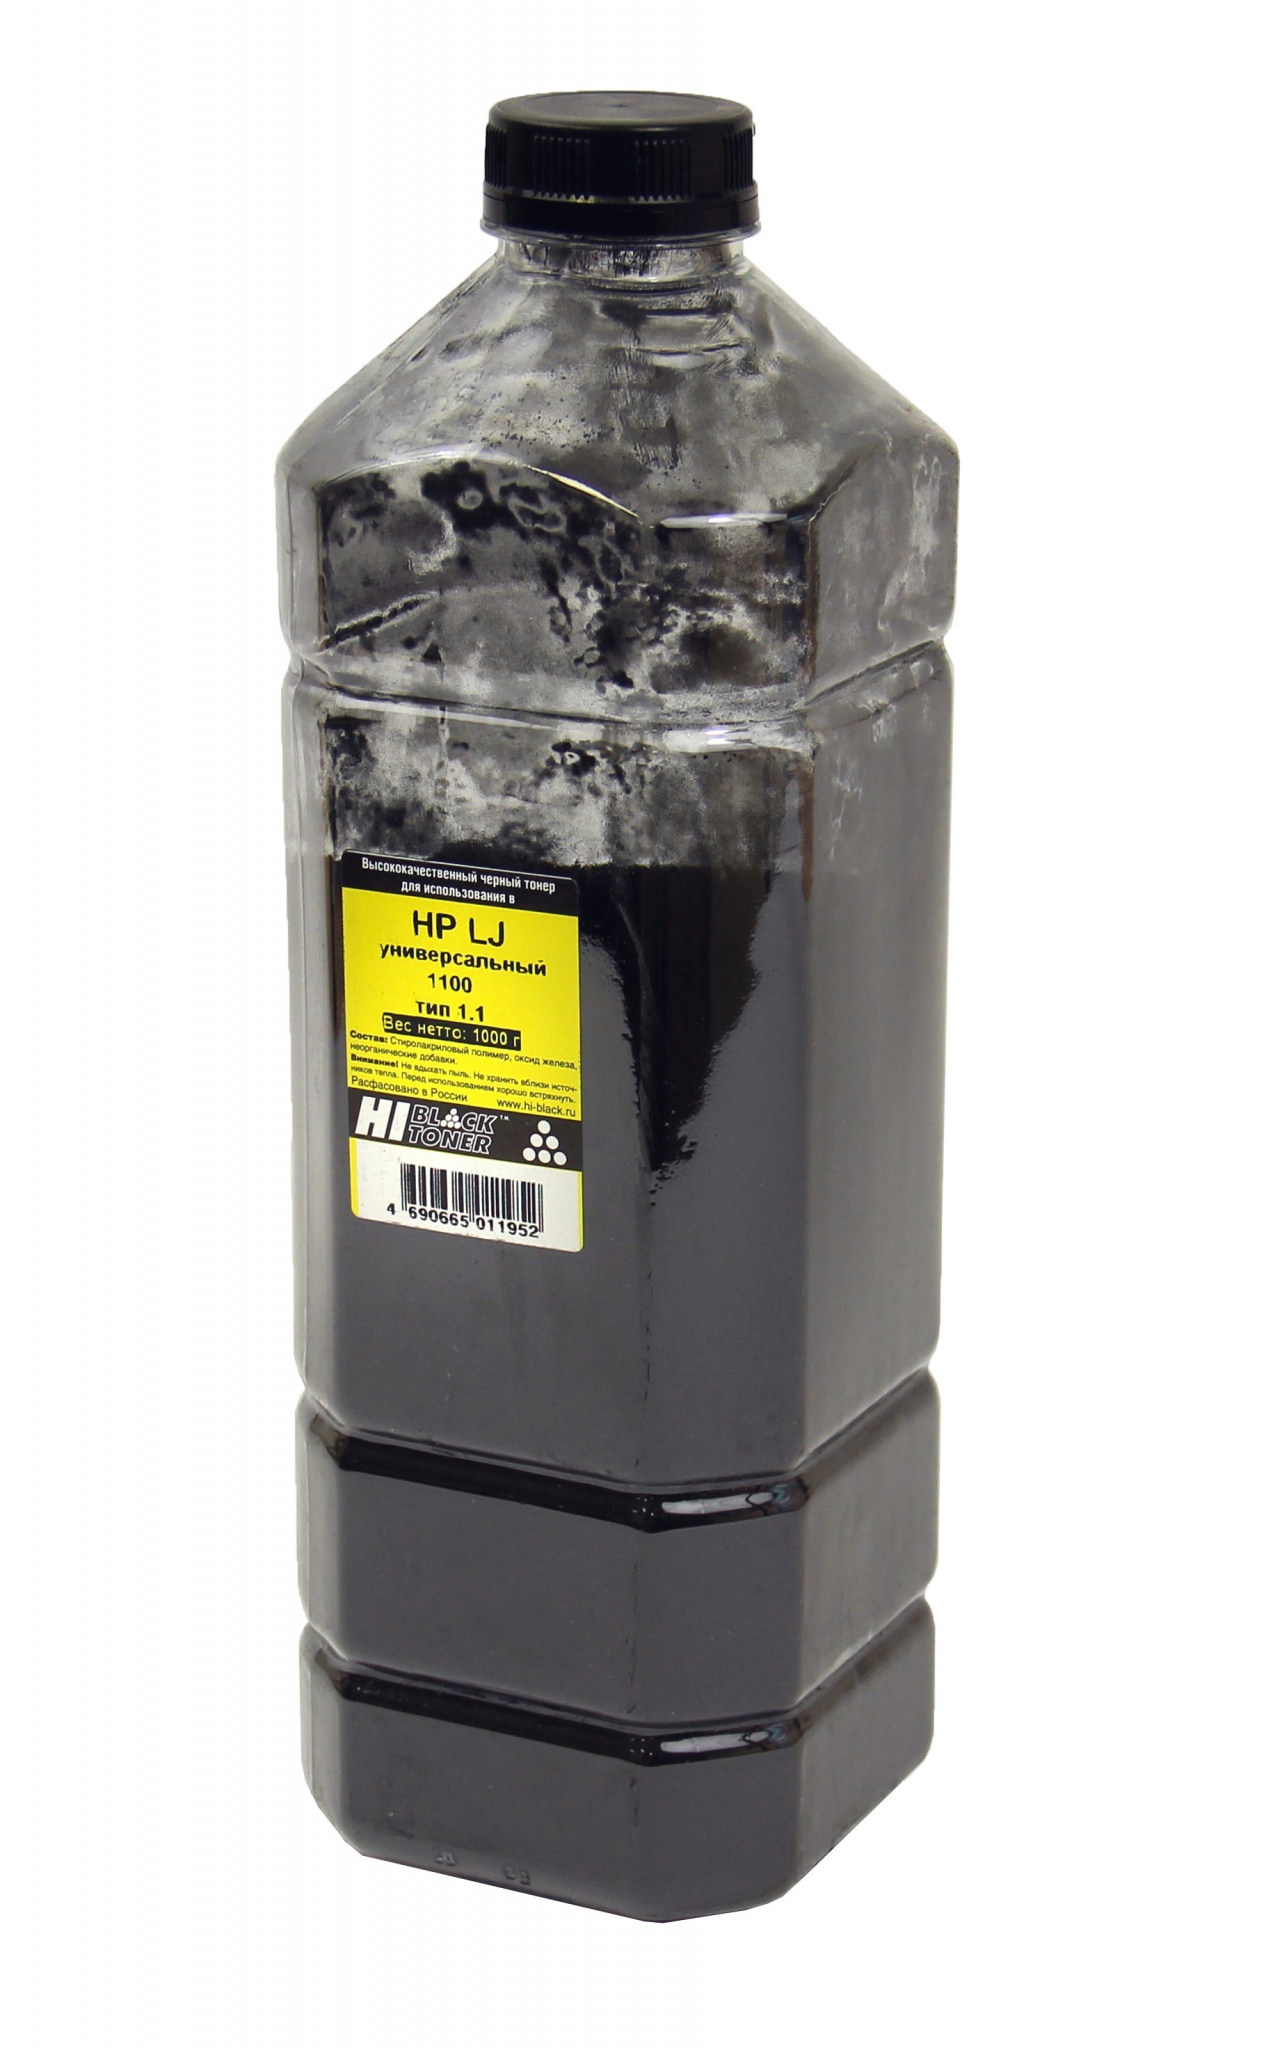 Тонер универсальный Hi-Black (C4092A) для HP LJ 1100, Тип 1.1, чёрный (1000 гр.)